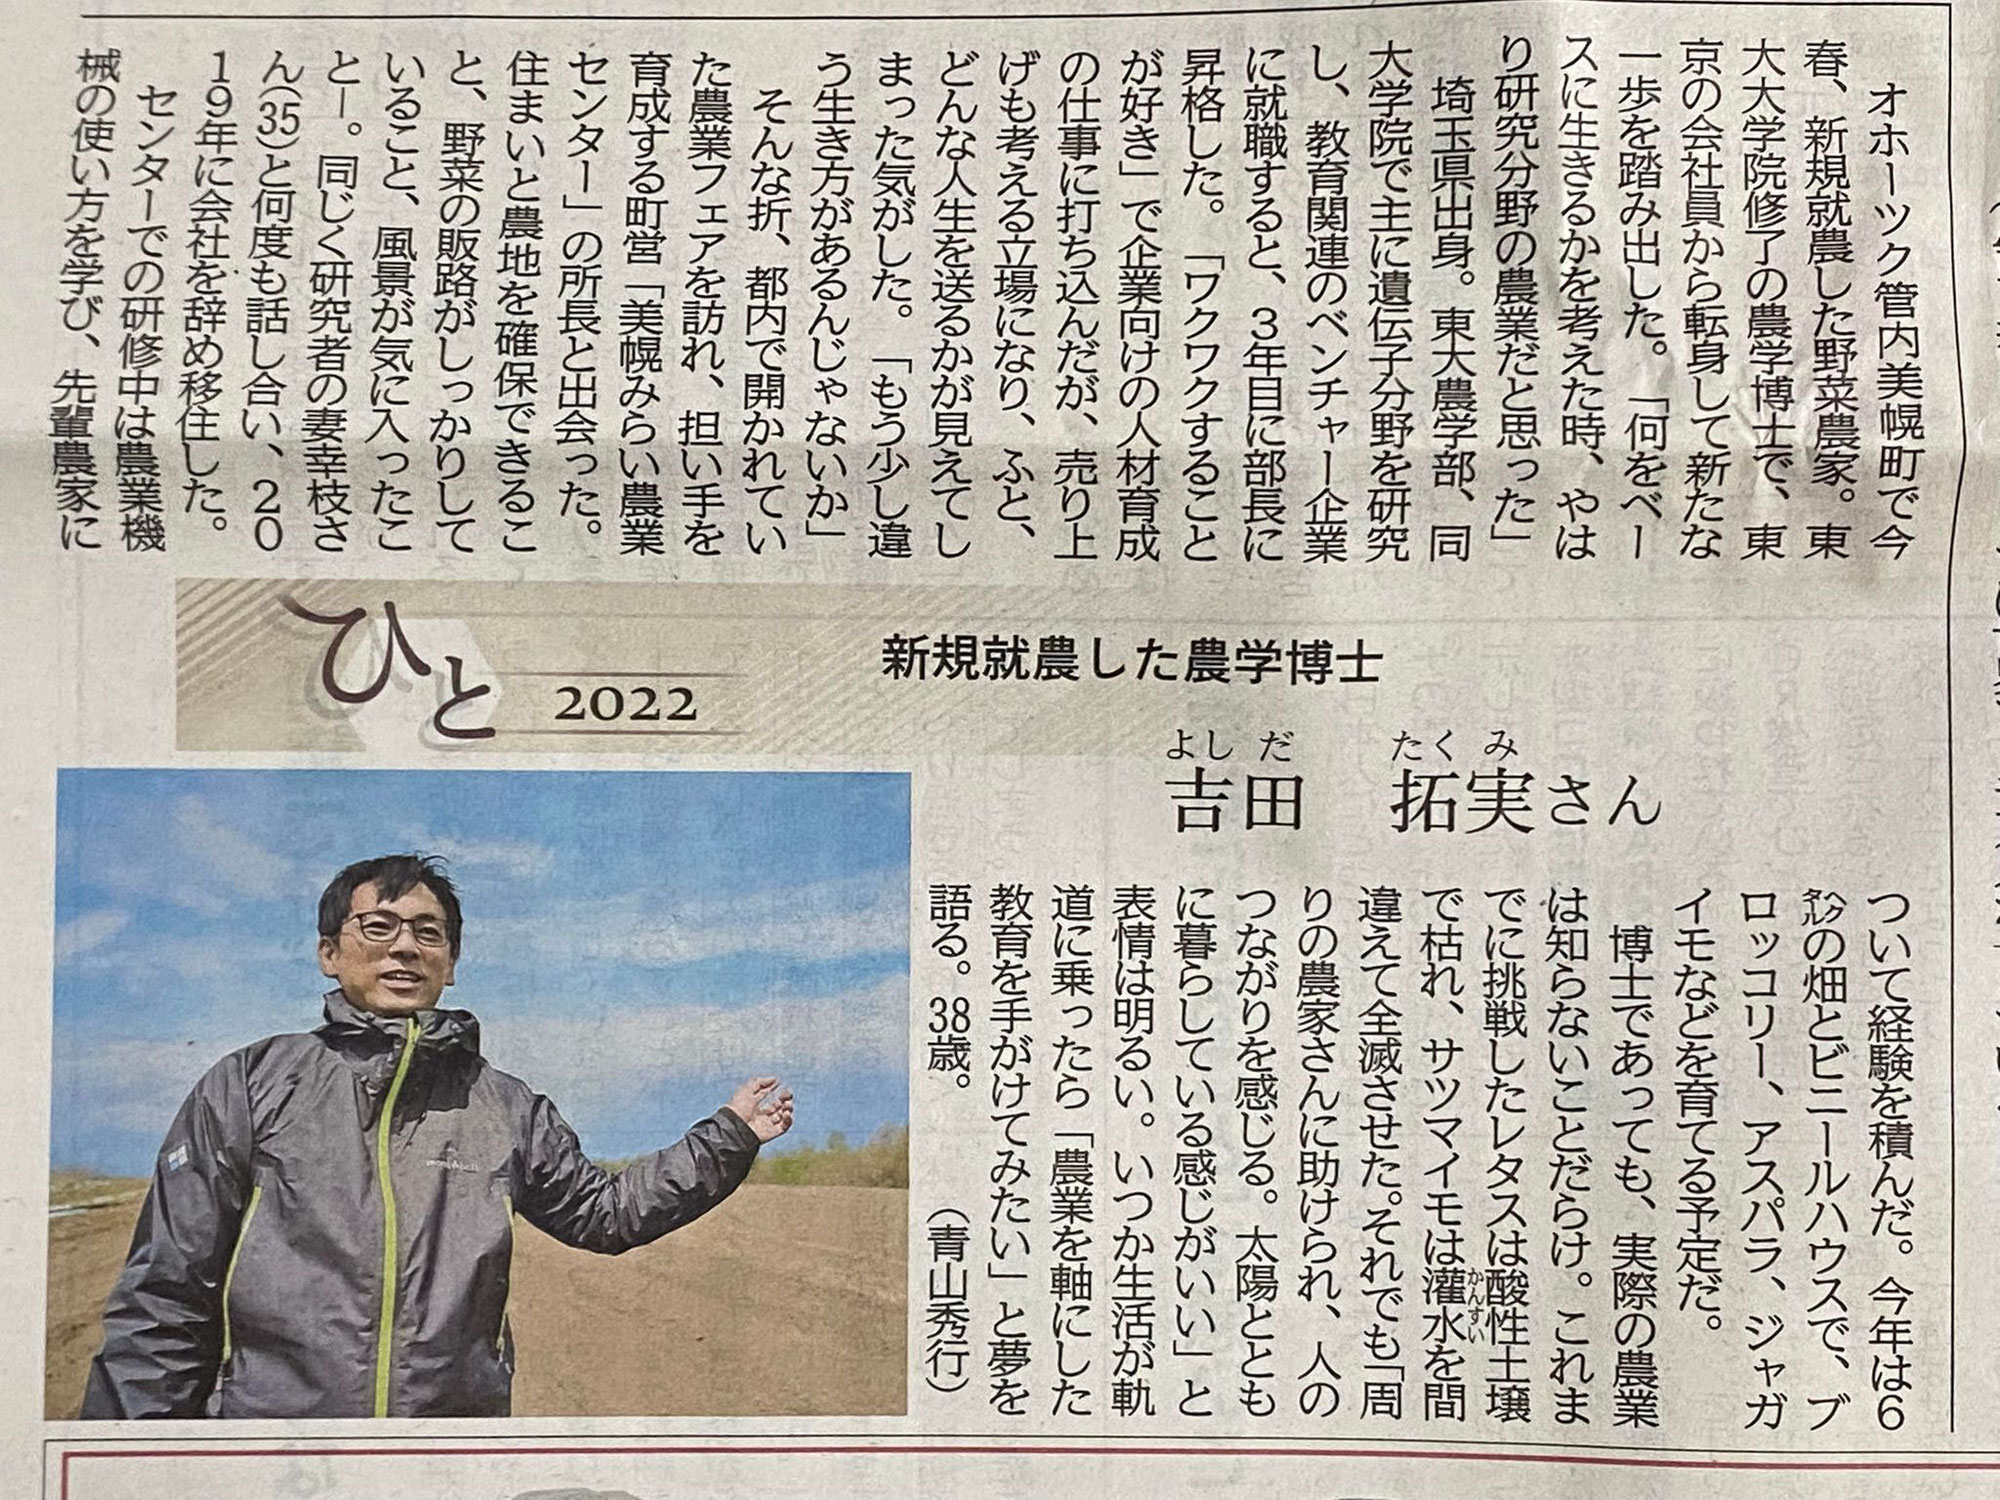 【報道】5/20 北海道新聞全道面「ひと」にて吉田拓実のインタビューが掲載されました